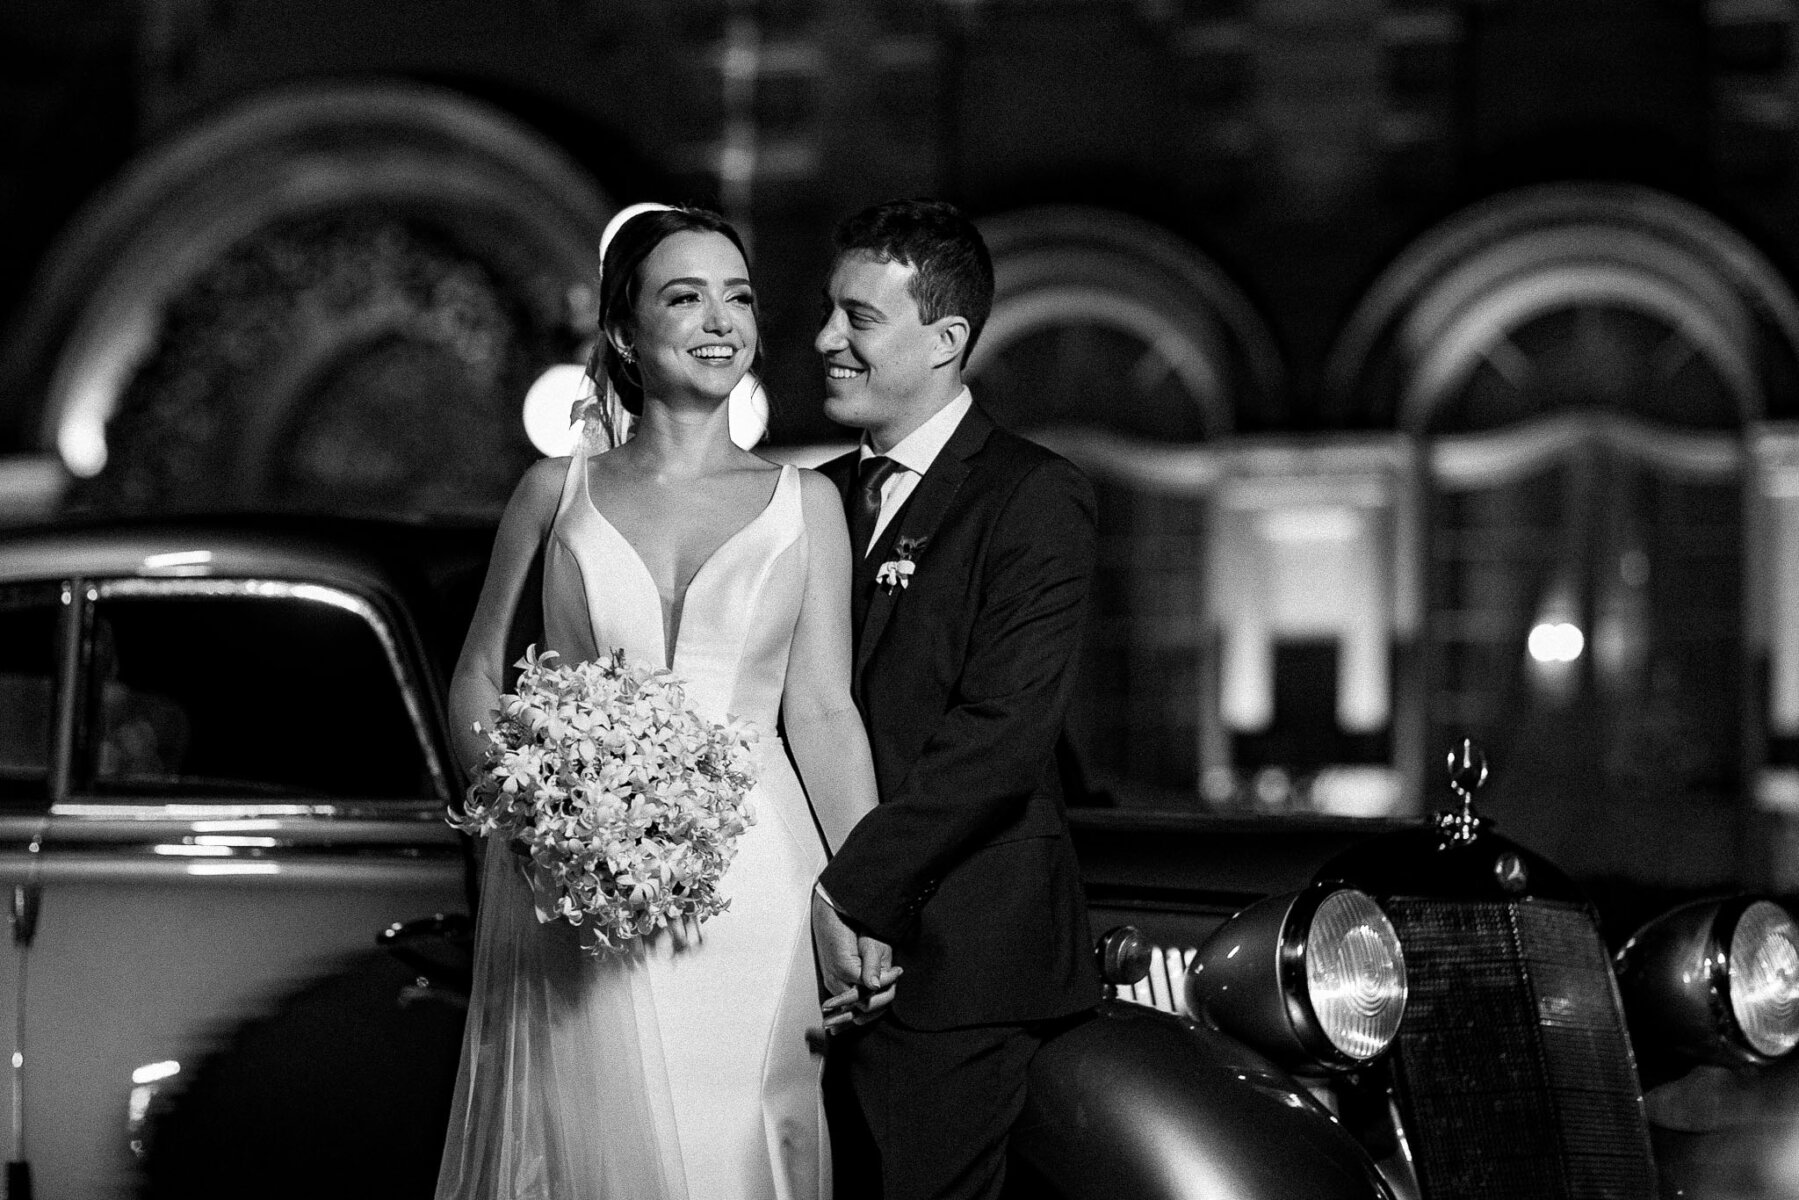 Casamento moderno: Noivos posam para foto em frente ao Castelo do Batel | | Fotos: Emerson Fiuza